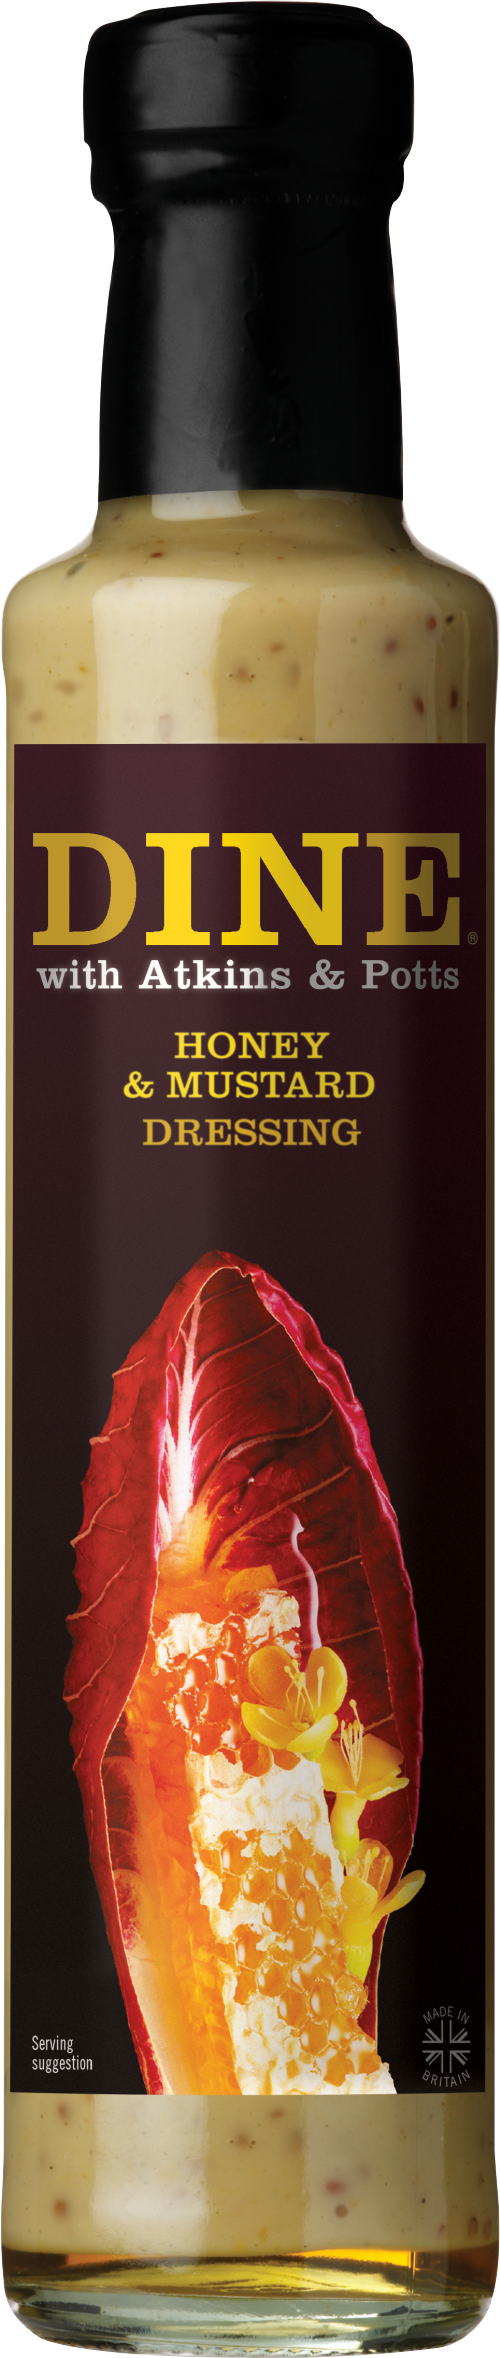 ATKINS & POTTS Honey & Mustard Dressing 220g